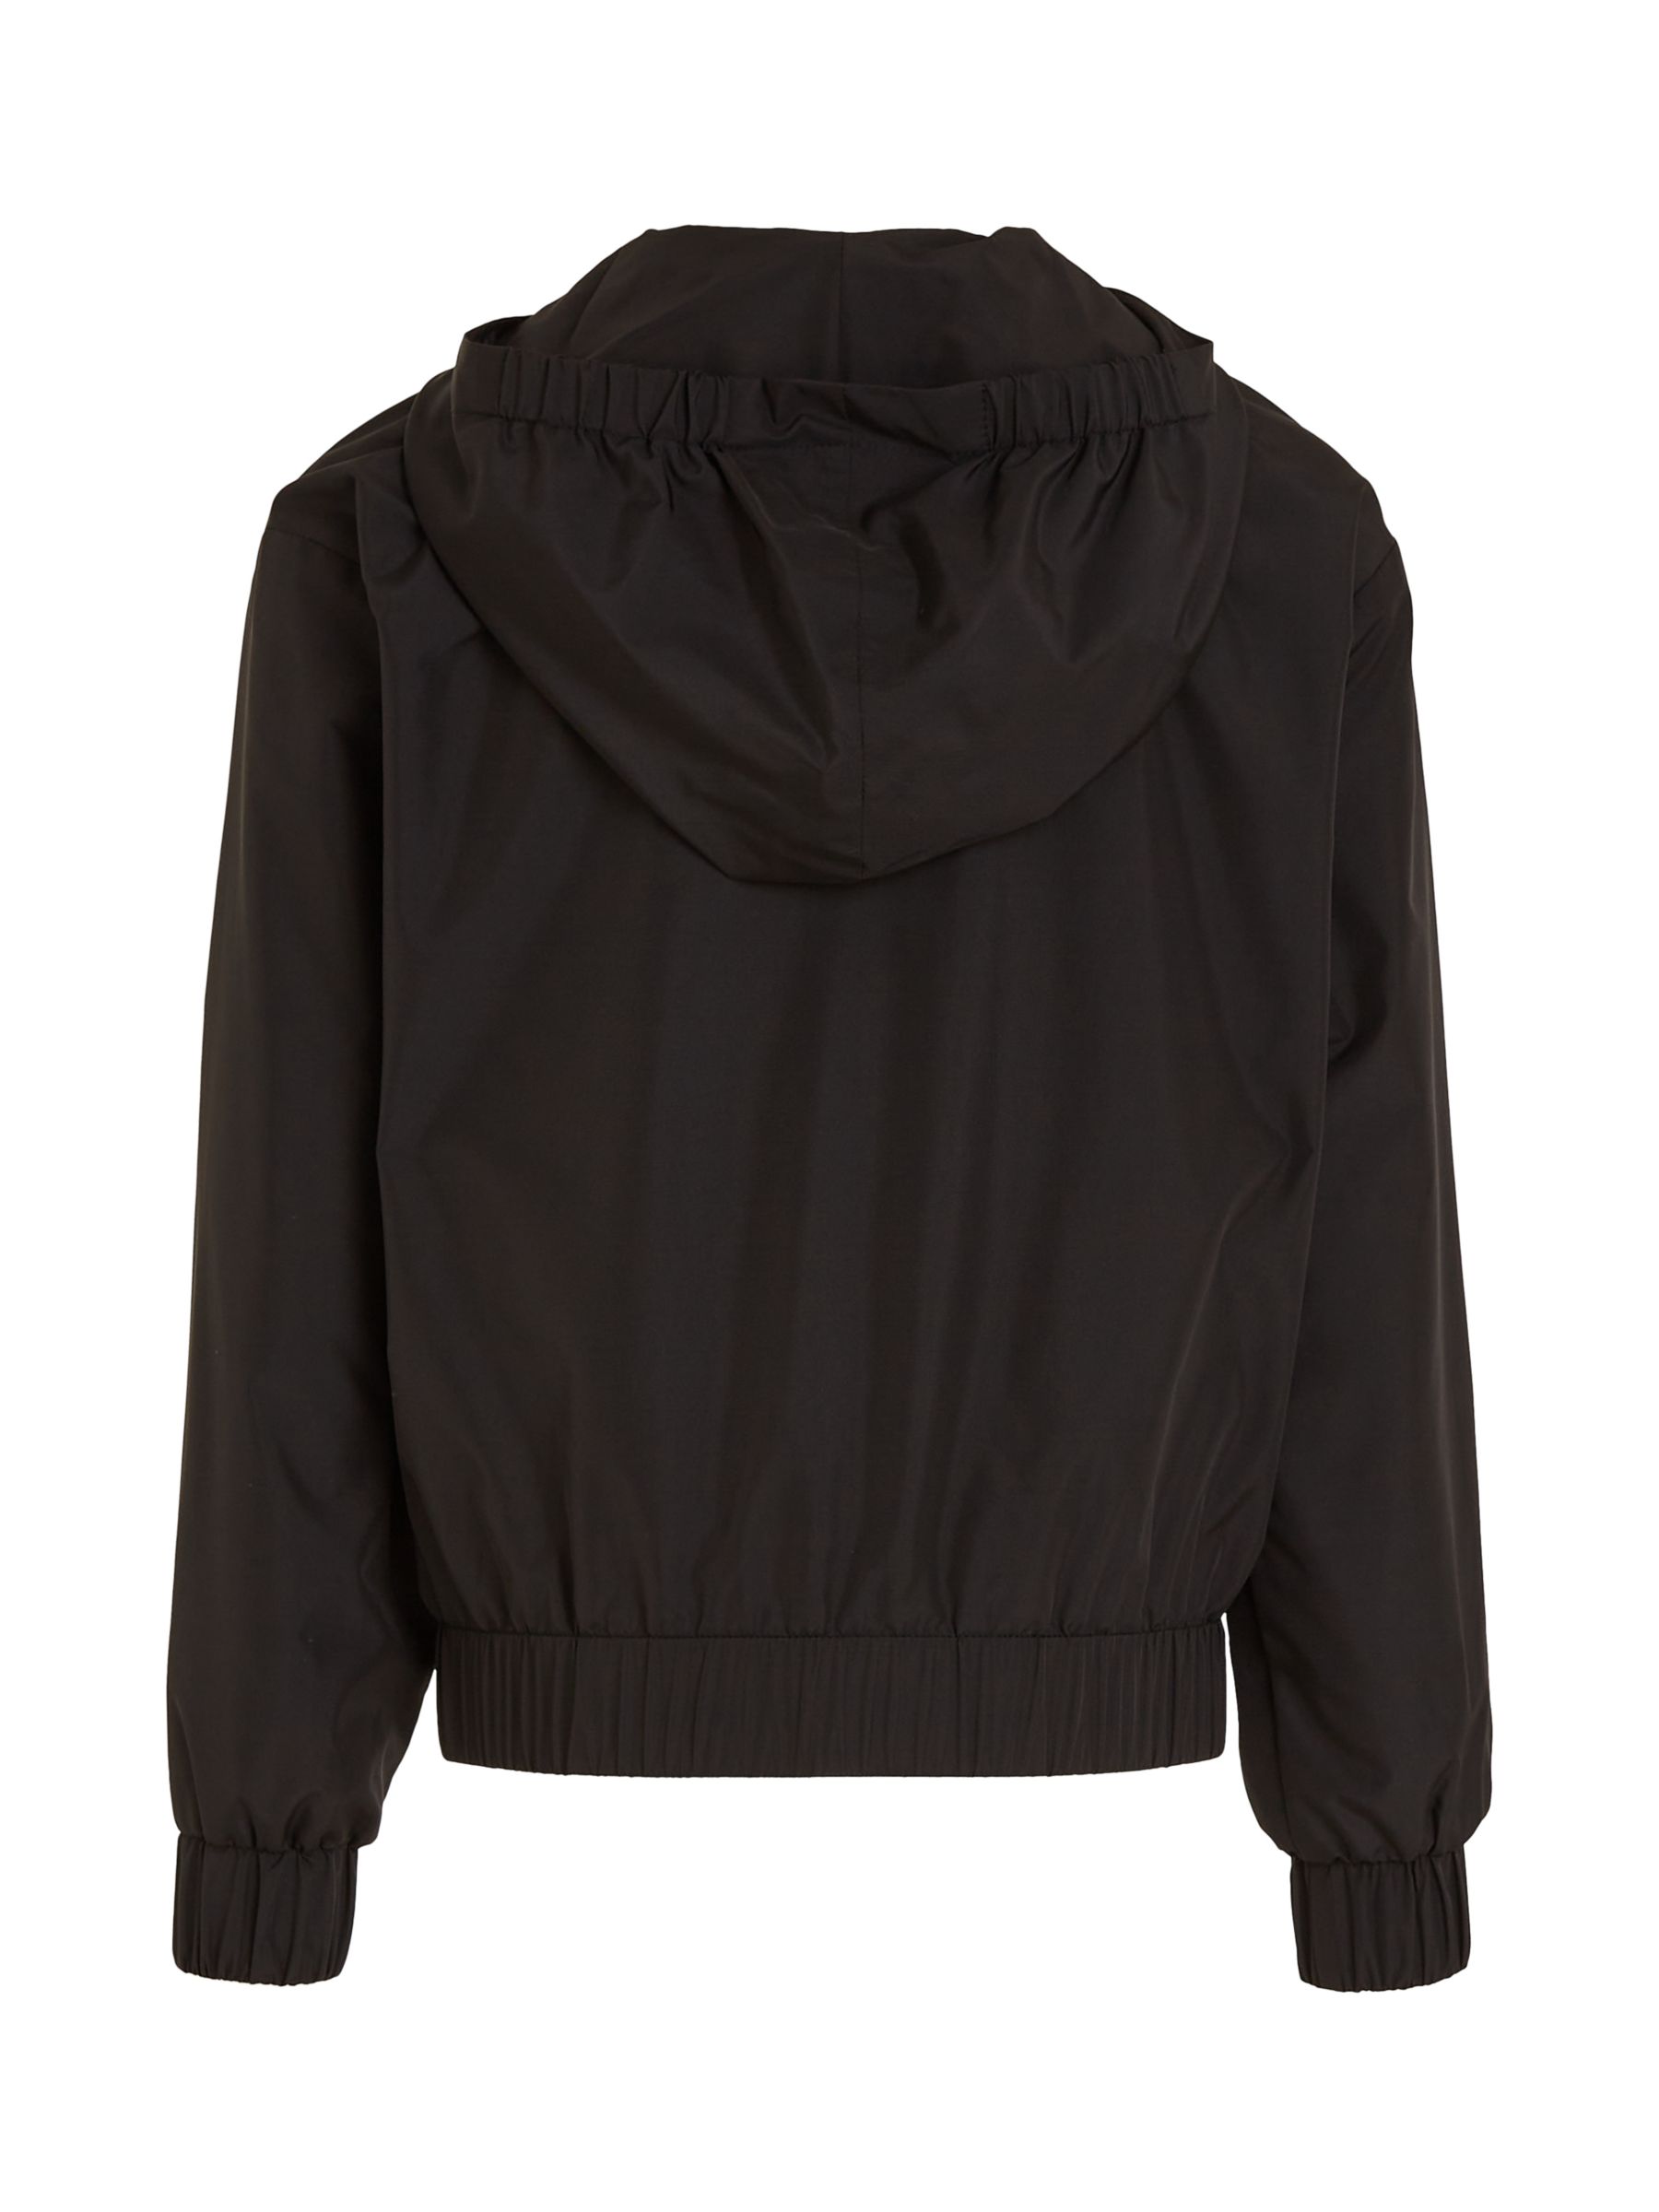 Calvin Klein Kids' Windbreaker Jacket, Black, 6 years